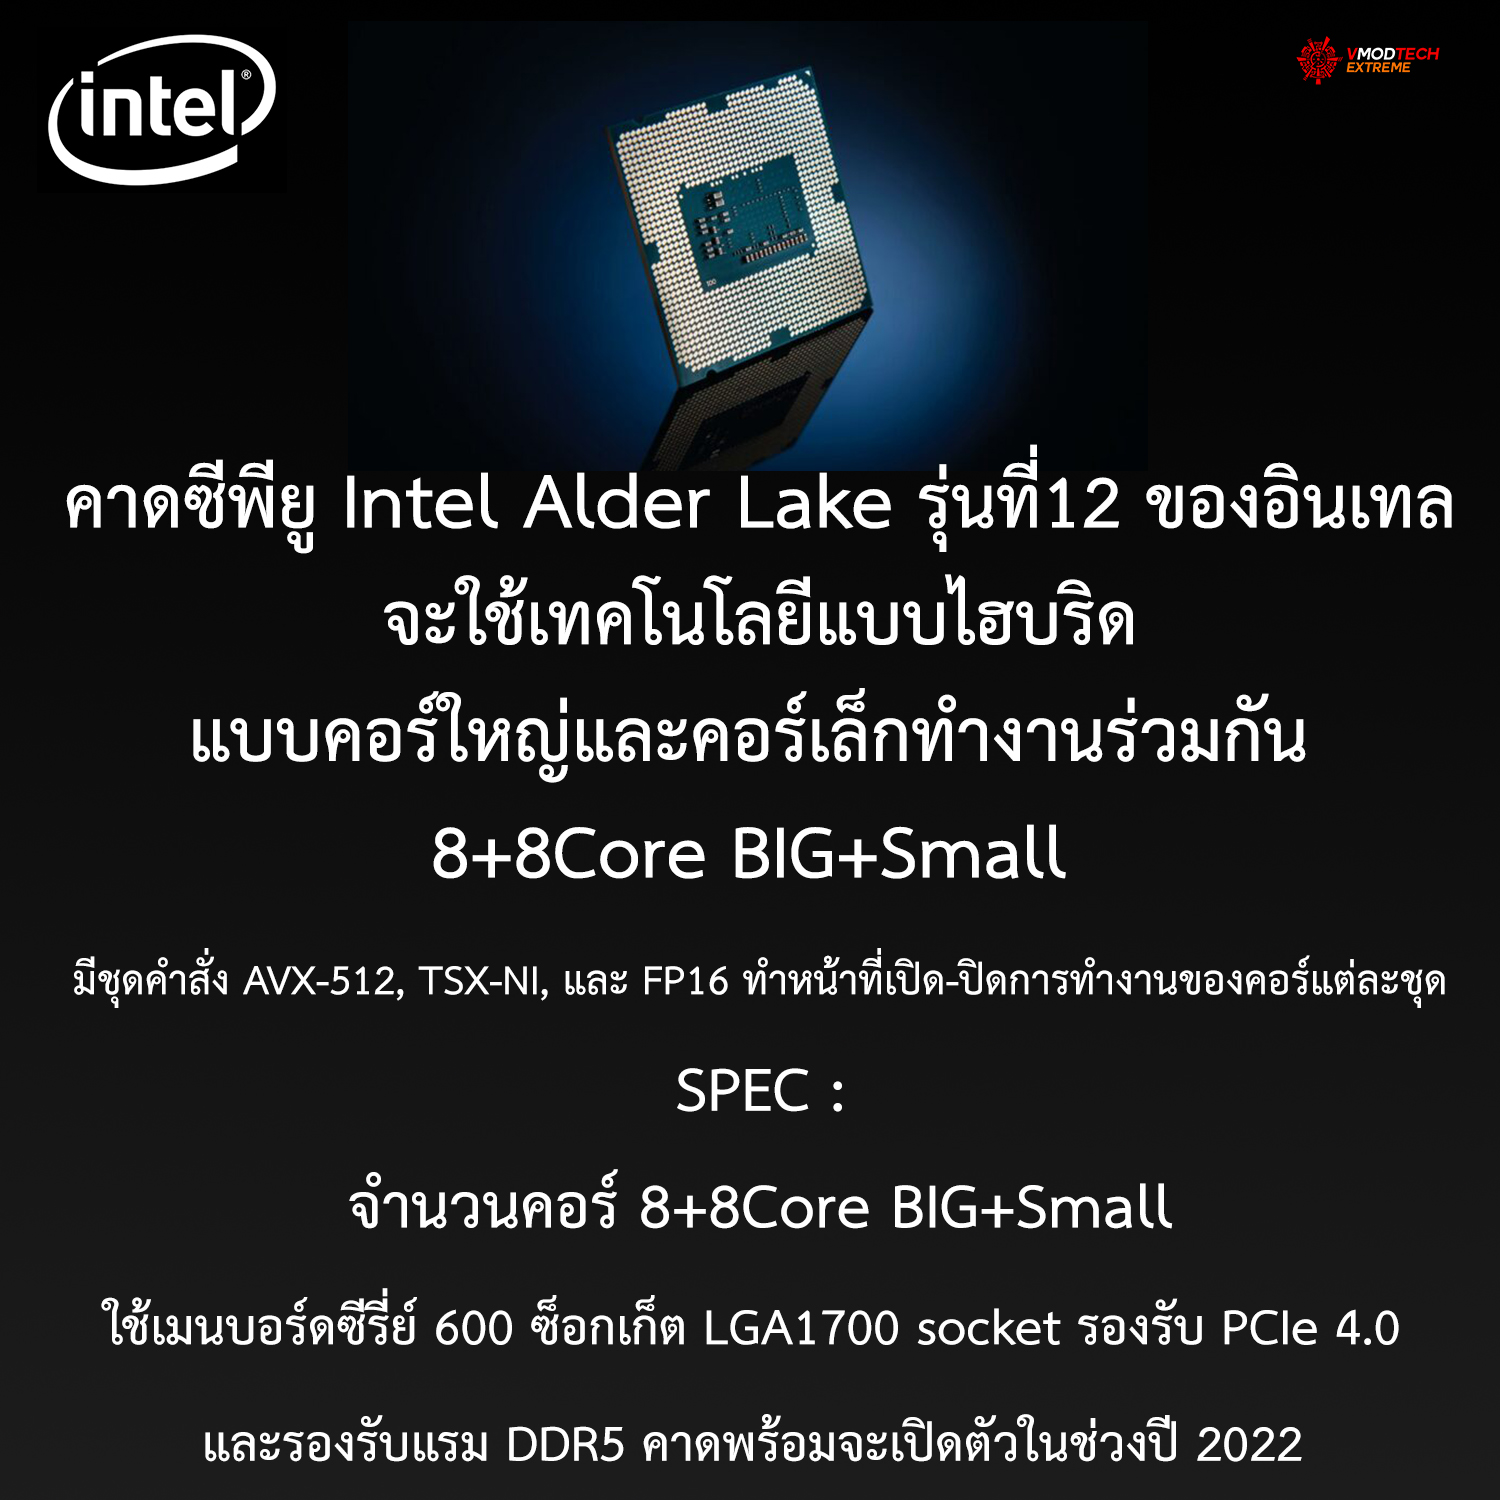 คาดซีพียู Intel Alder Lake รุ่นที่12 ของอินเทลจะใช้เทคโนโลยีแบบไฮบริดแบบคอร์ใหญ่และคอร์เล็กทำงานร่วมกัน 